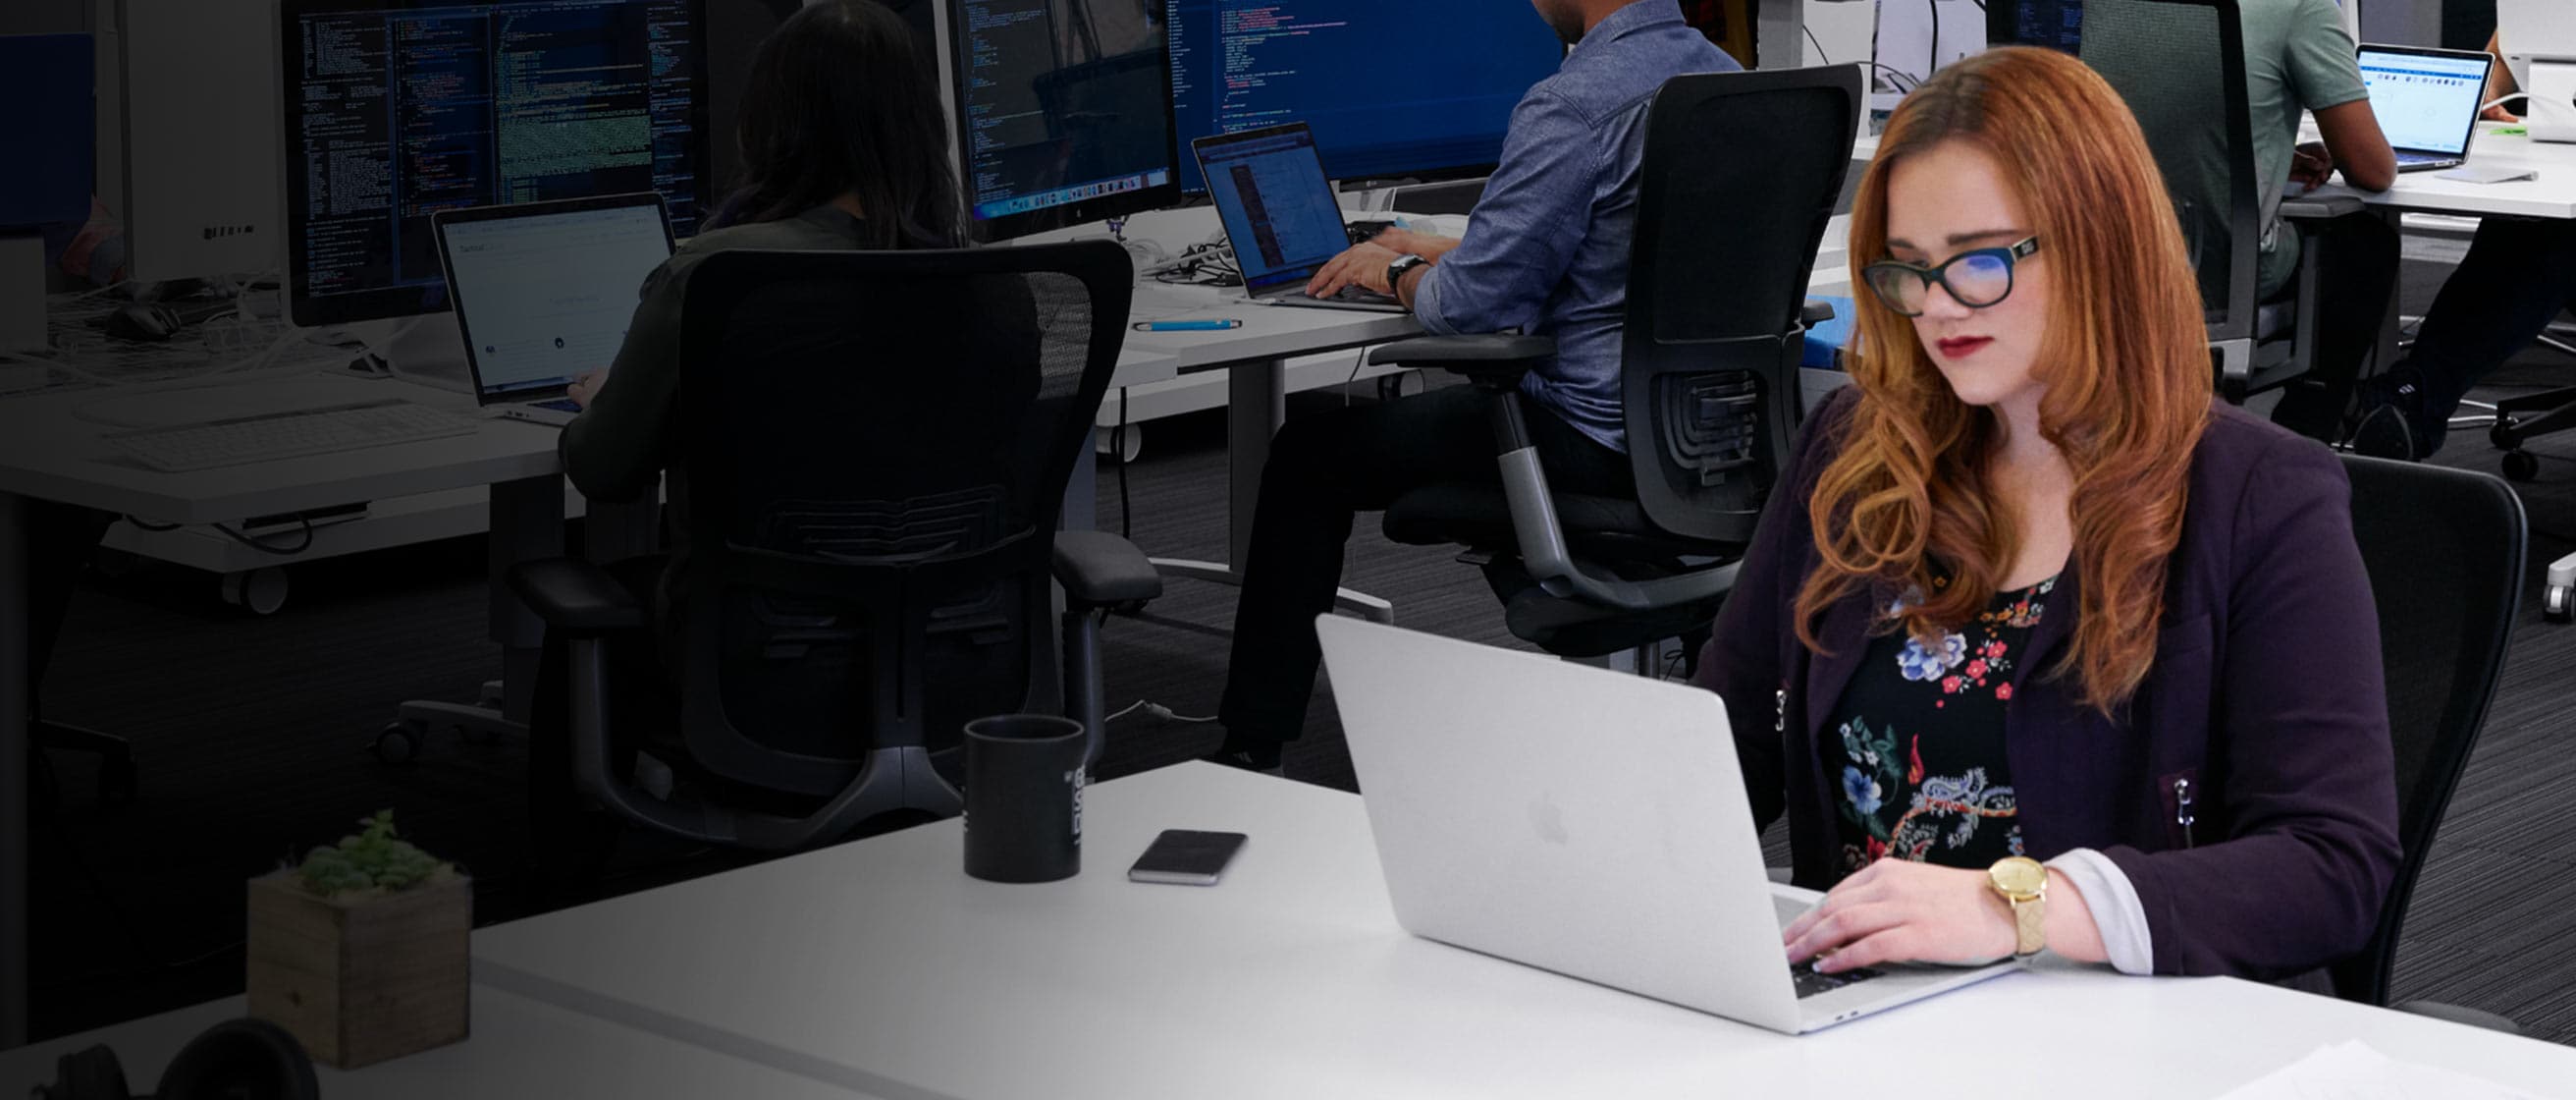 Persona trabajando en un ordenador portátil en la oficina